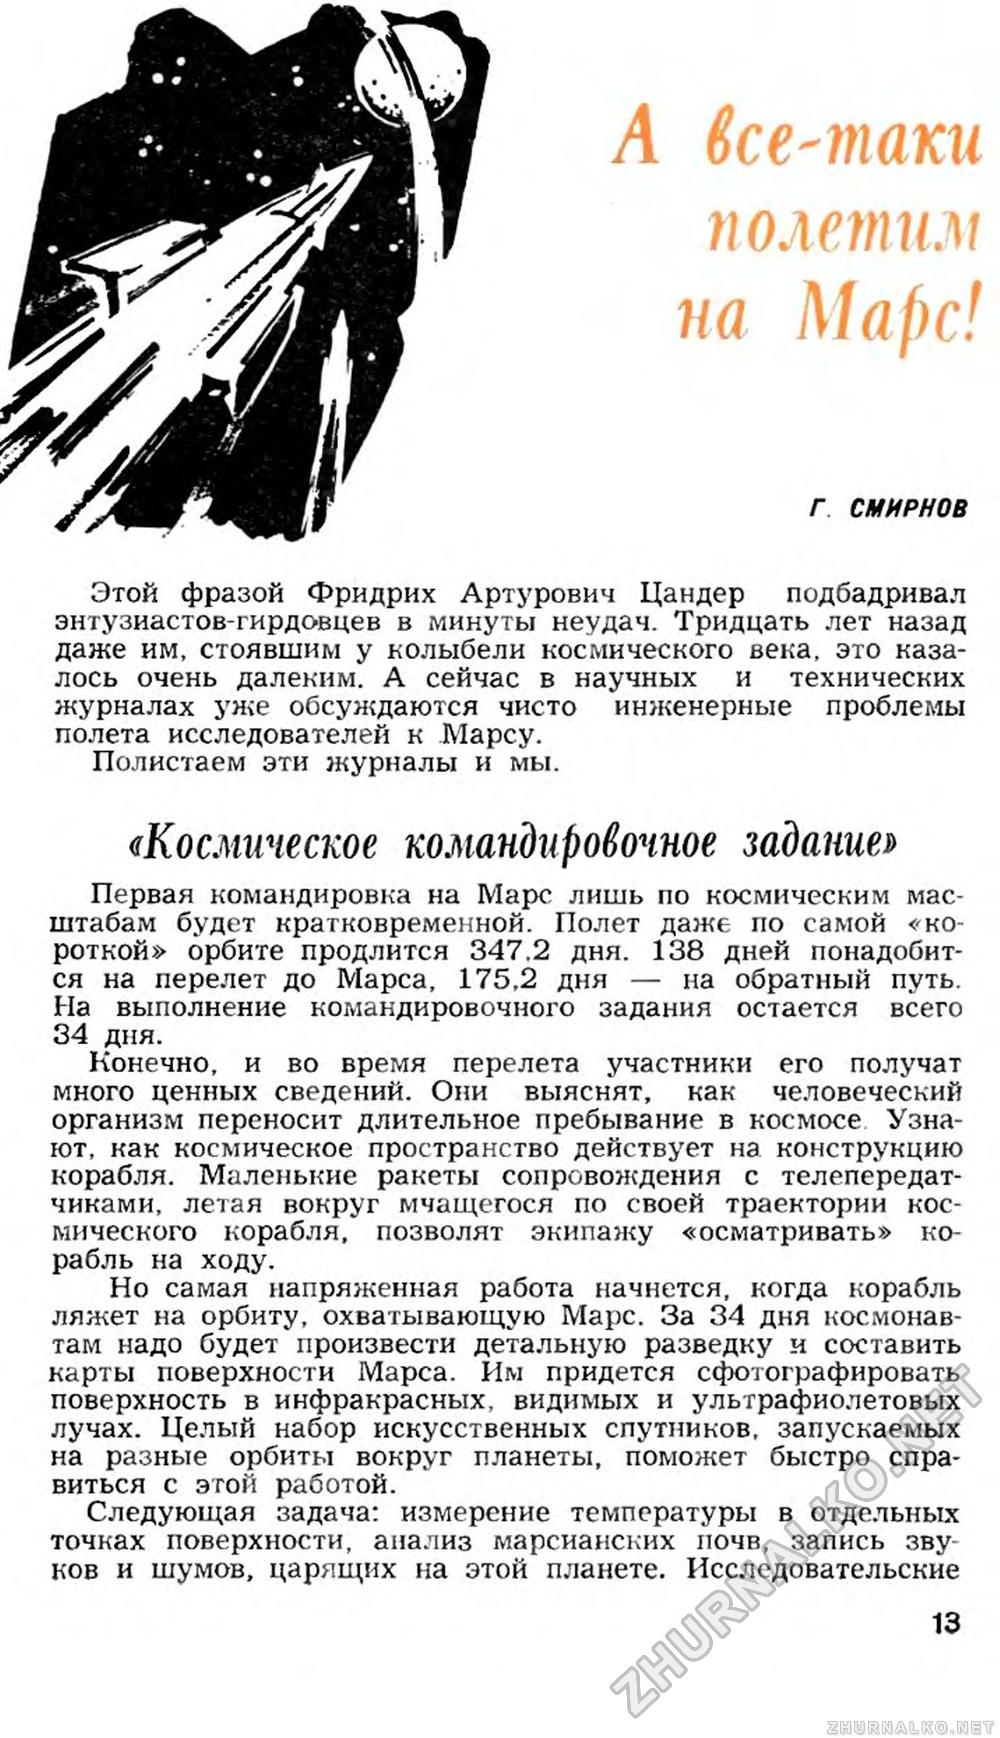   1963-11,  15